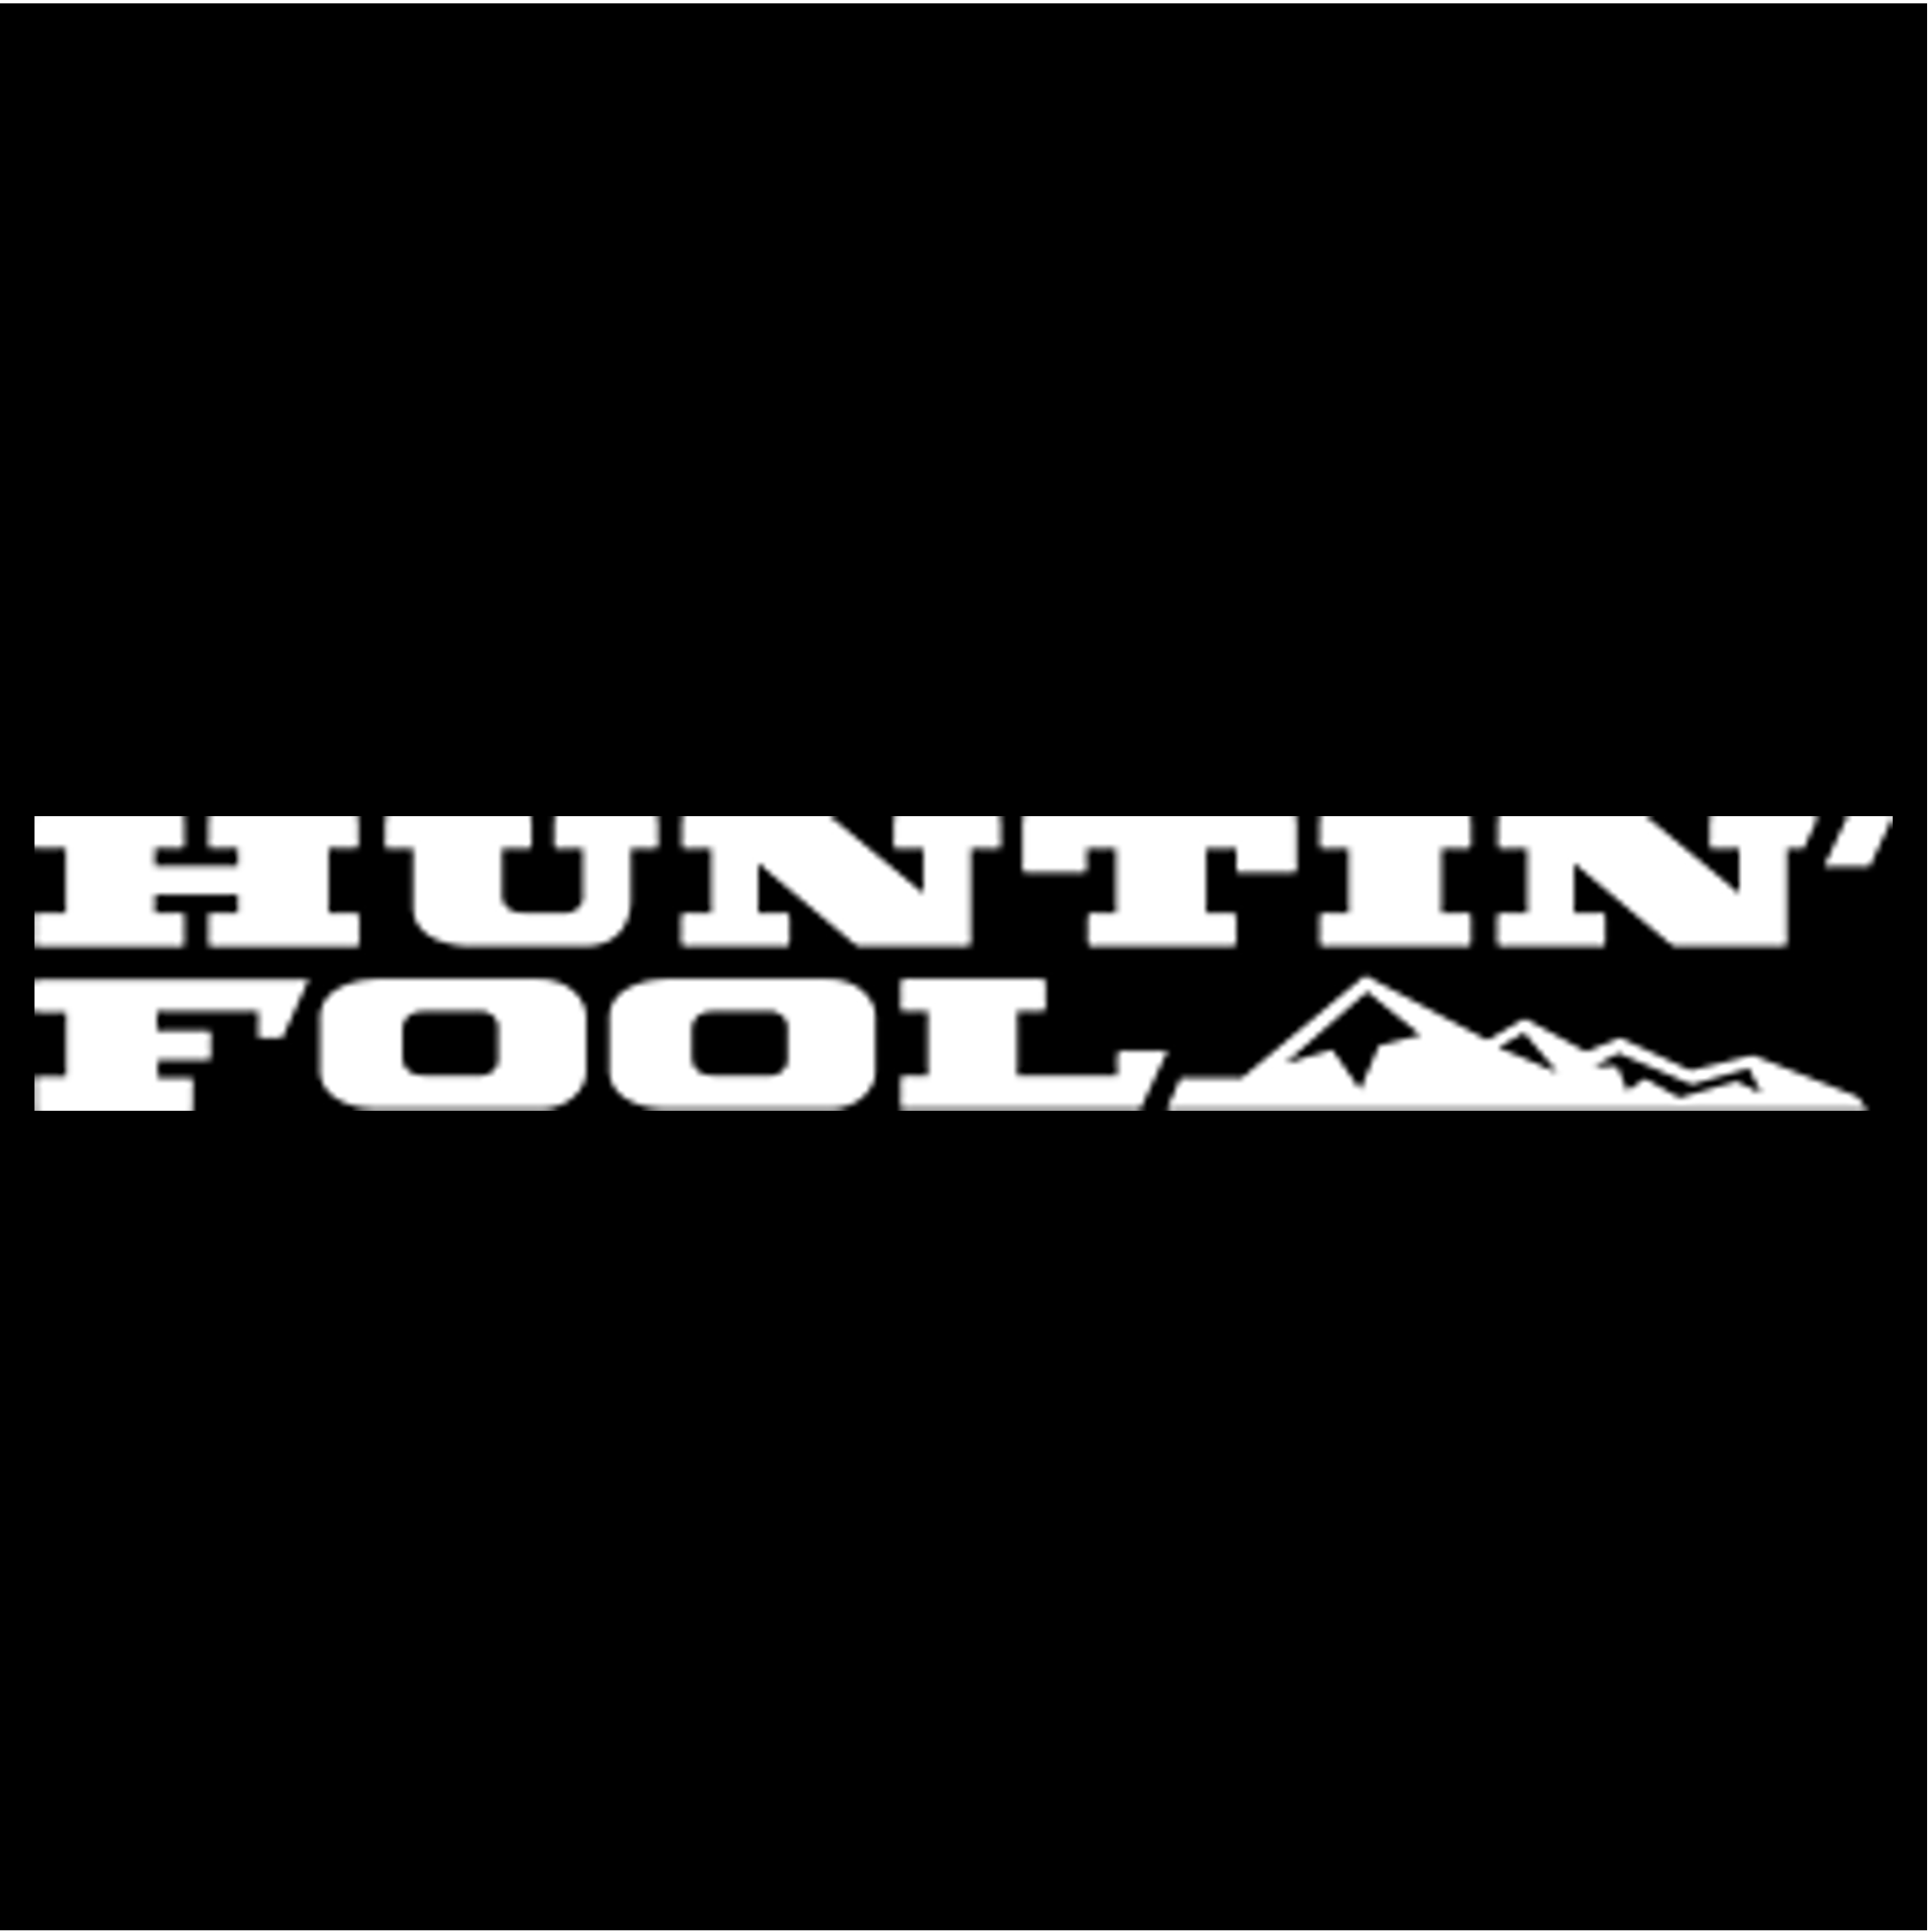 Huntin’ Fool